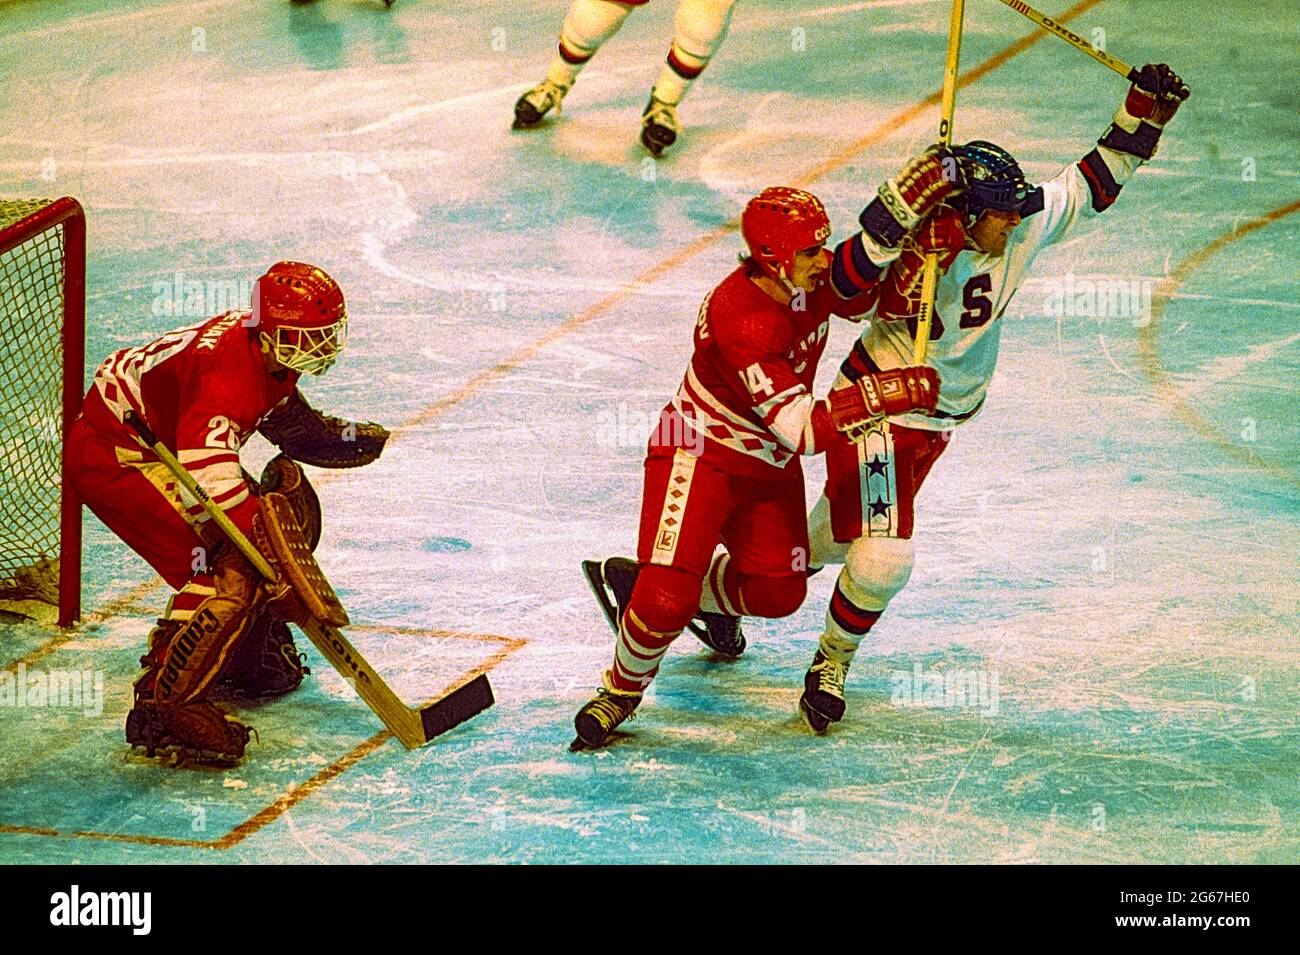 Action lors d'un match Team USA contre l'URSS dans la demi-finale hommes hockey sur glace aux Jeux Olympiques d'hiver 1980. Banque D'Images